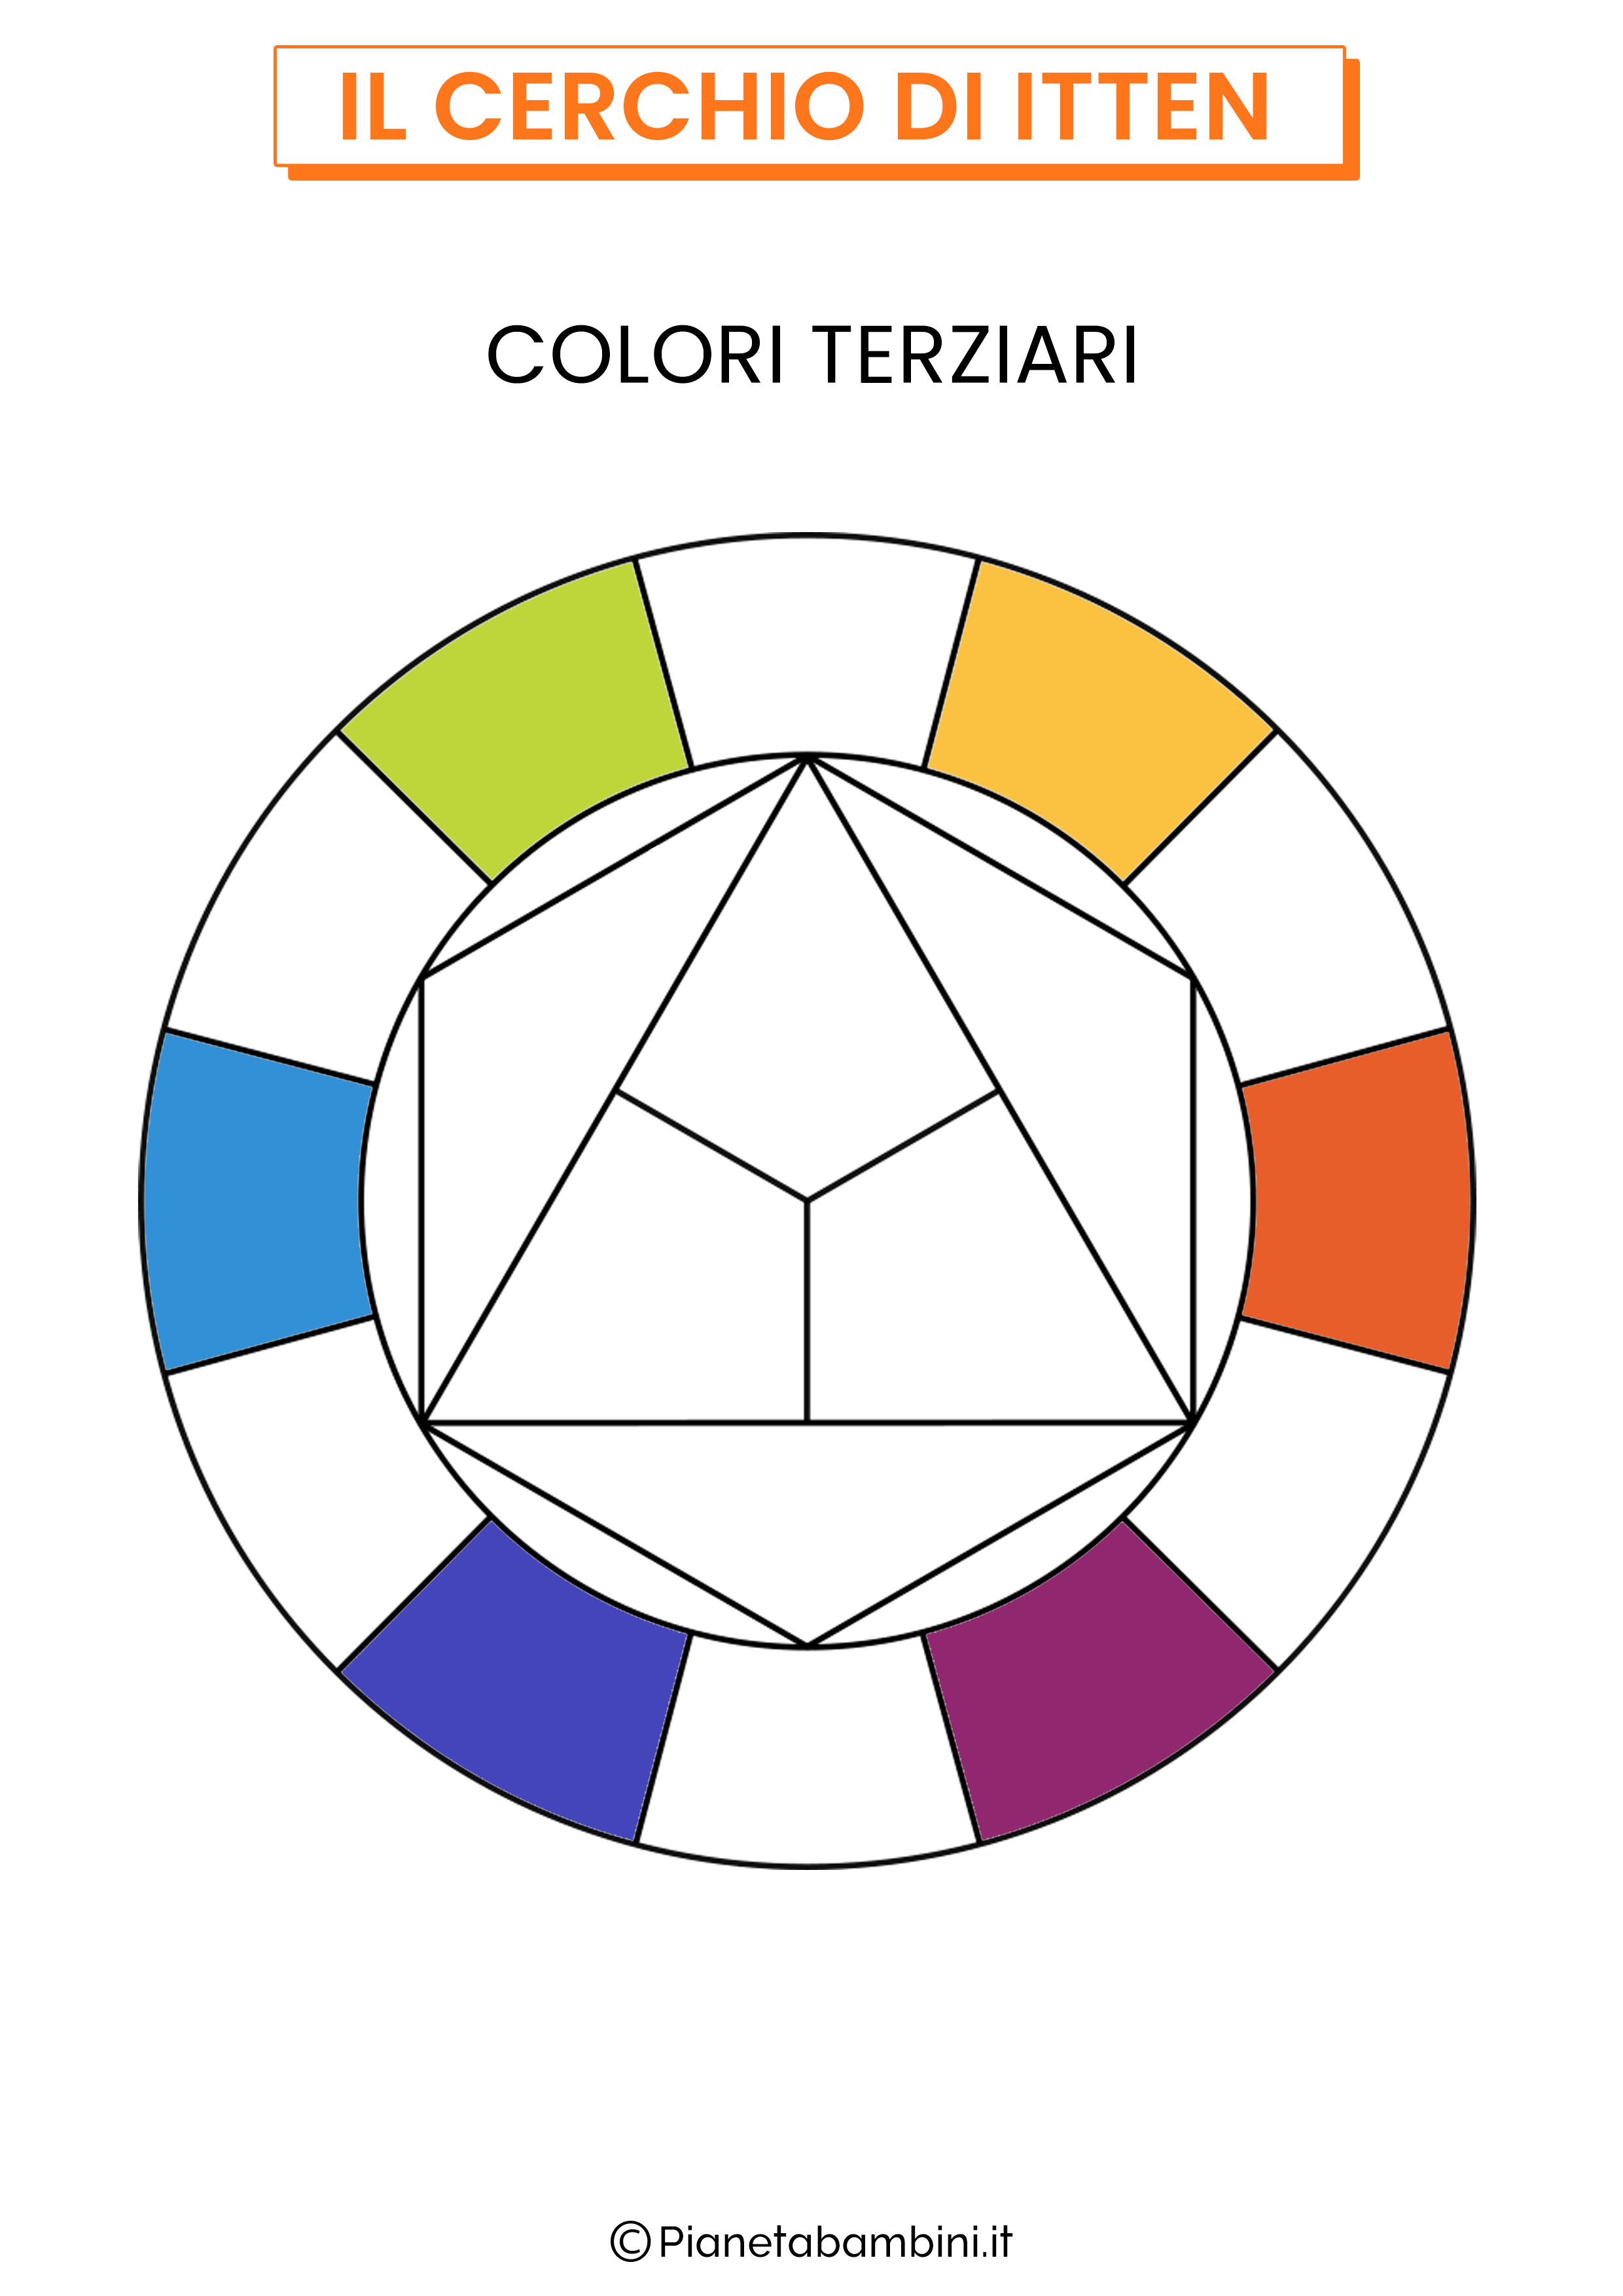 Cerchio dei colori di Itten colori terziari